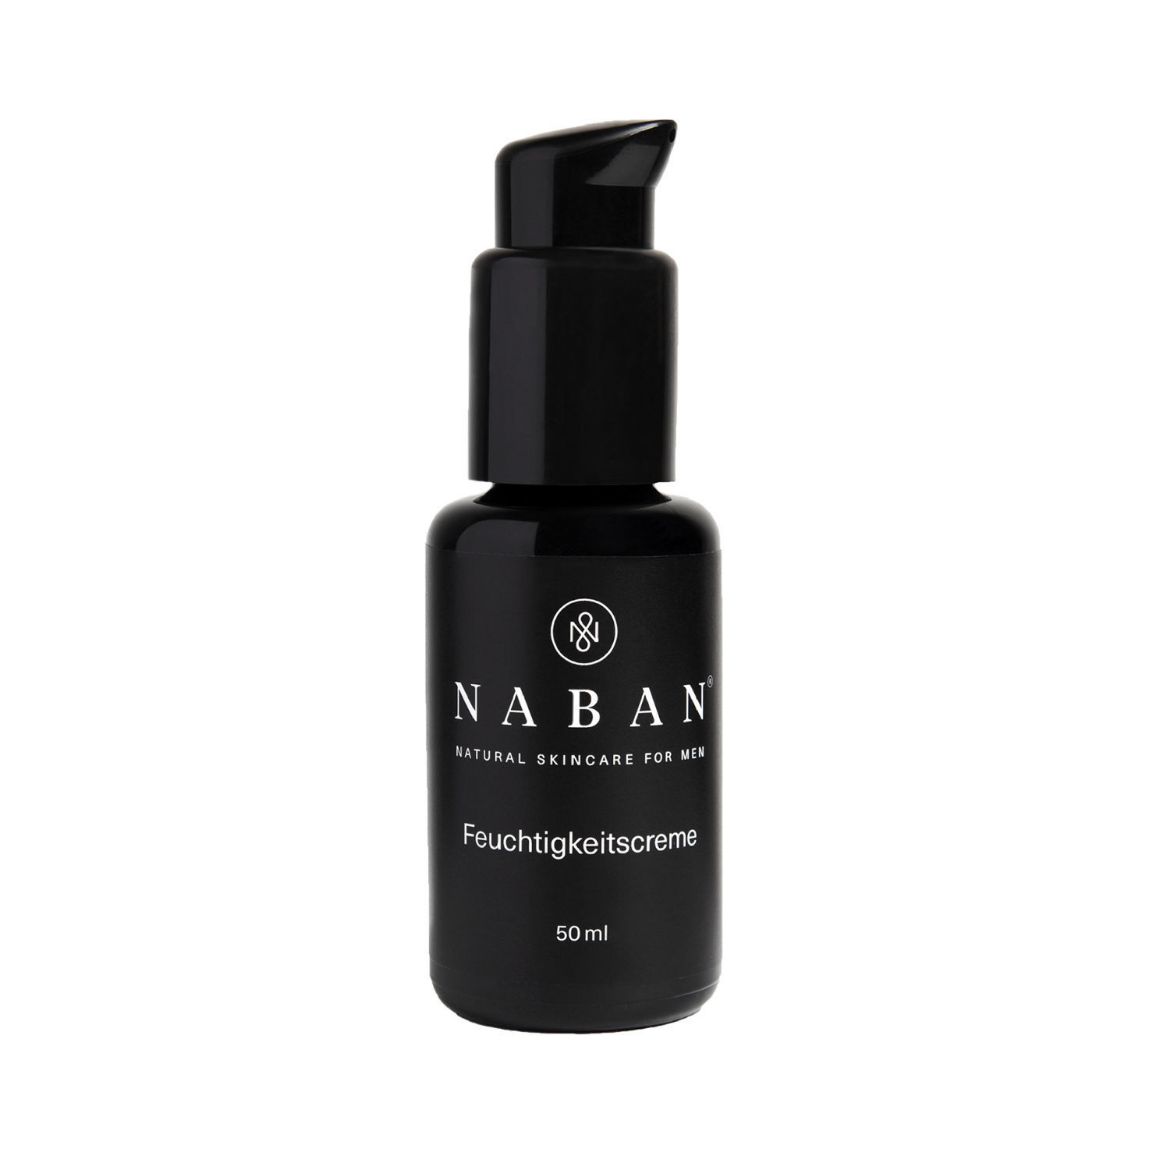 Image of NABAN moisturizer (50ml)